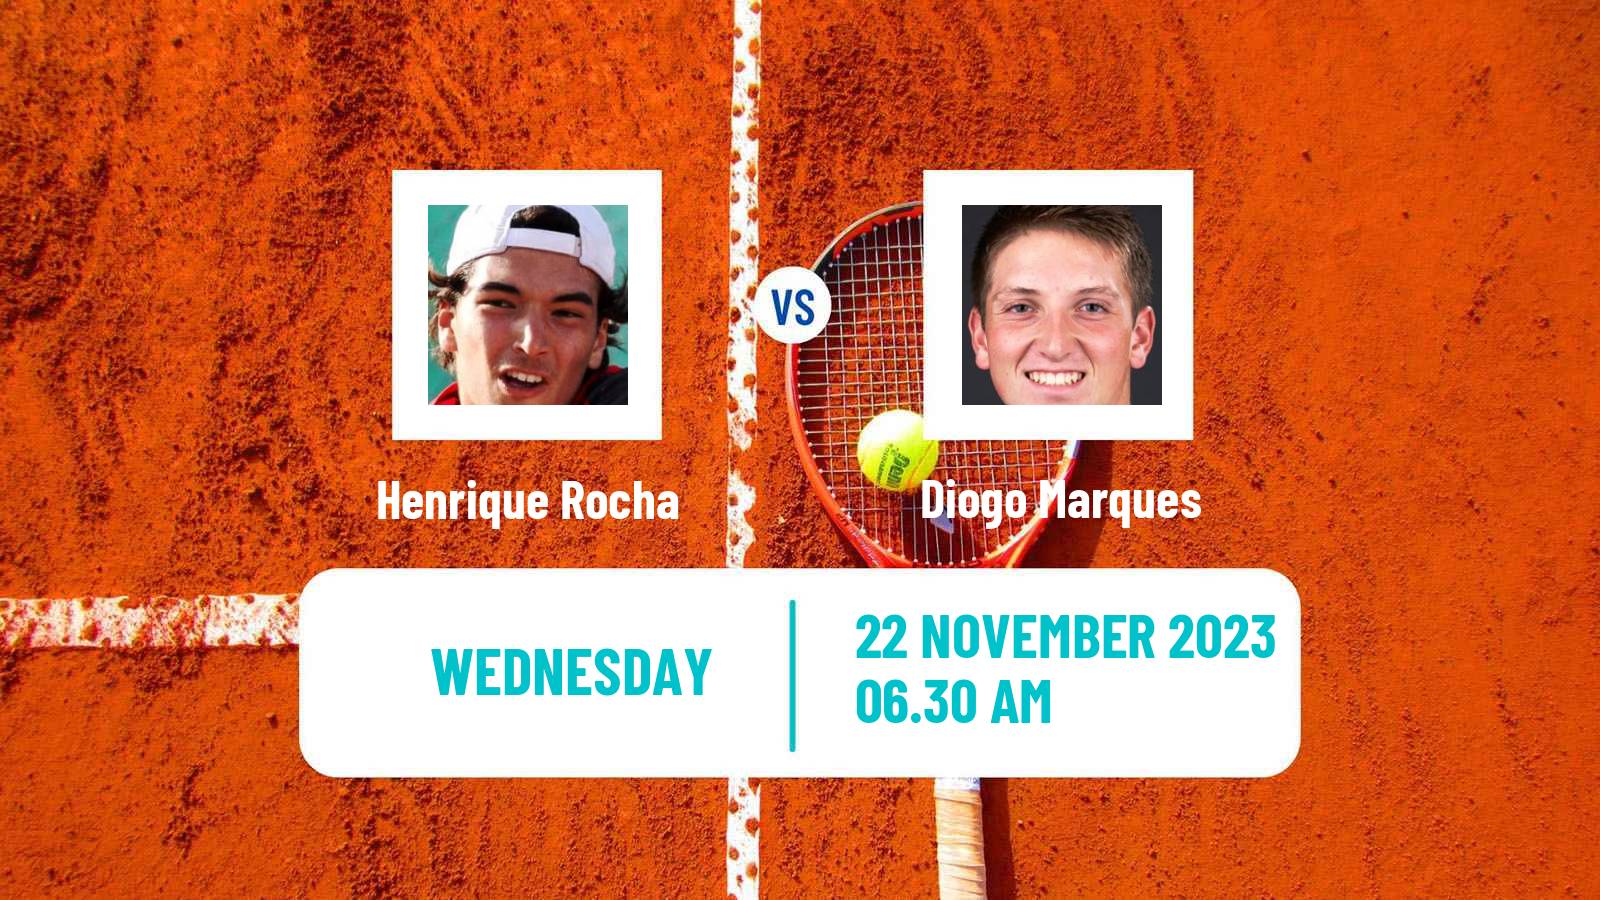 Tennis ITF M25 Vale Do Lobo 2 Men Henrique Rocha - Diogo Marques